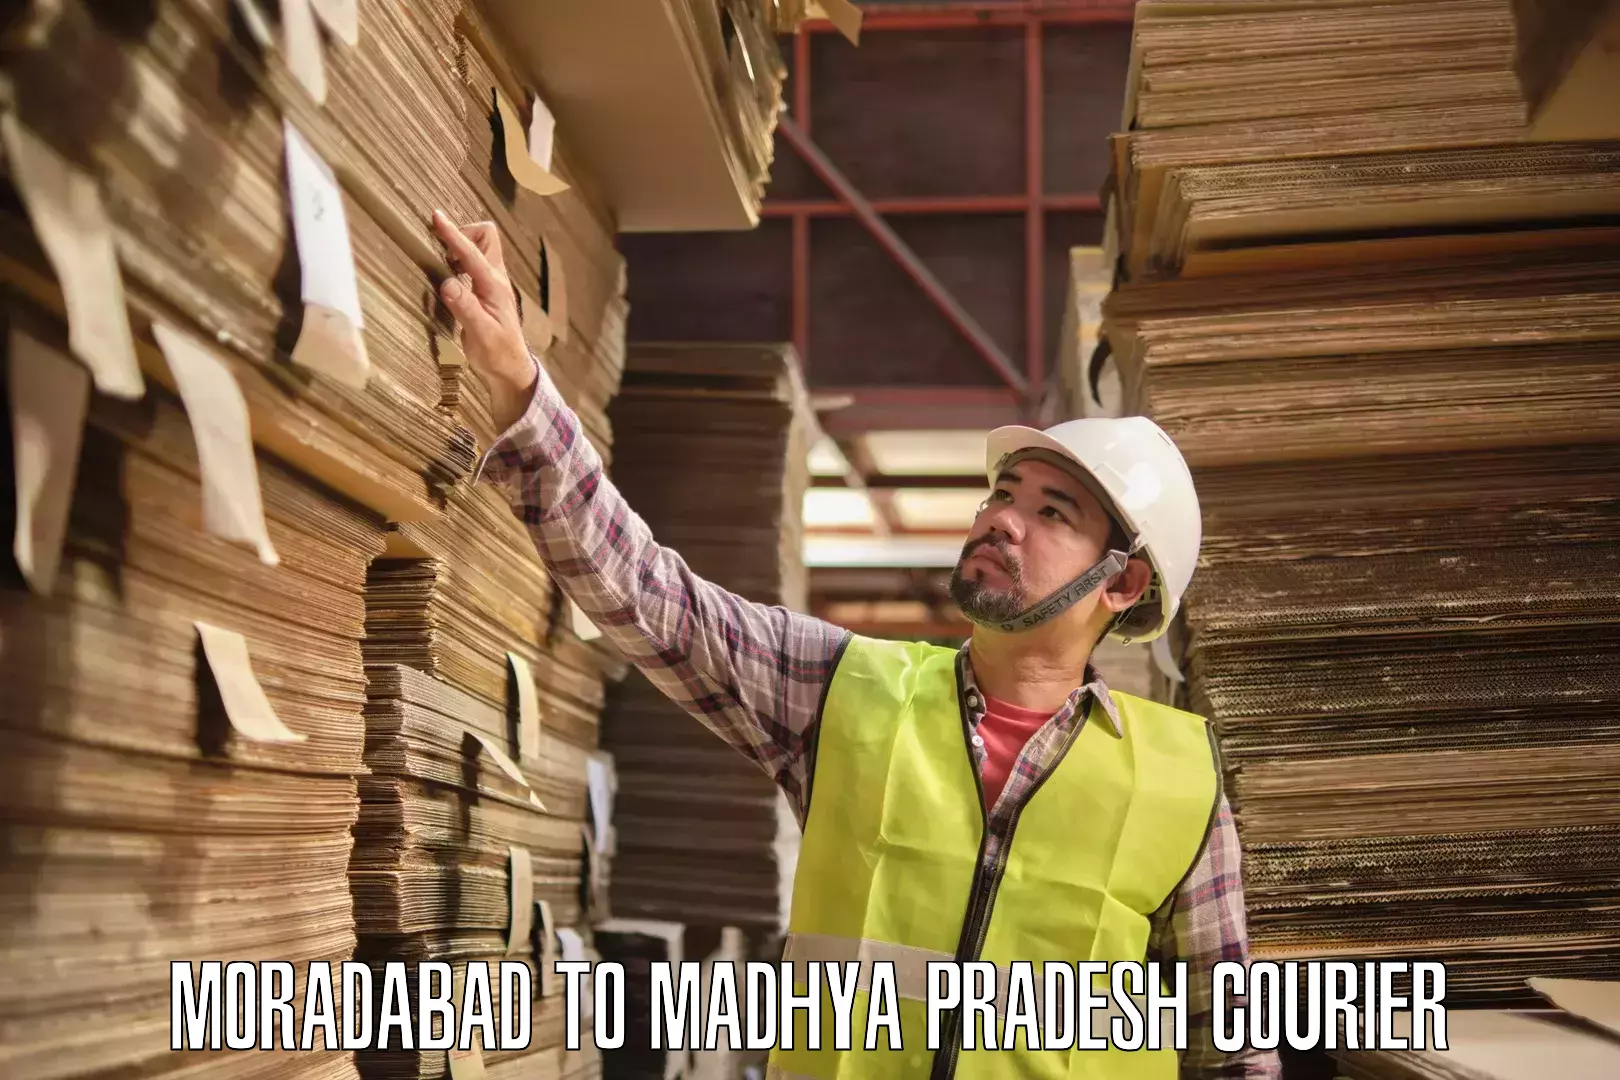 Professional courier handling Moradabad to Nagod